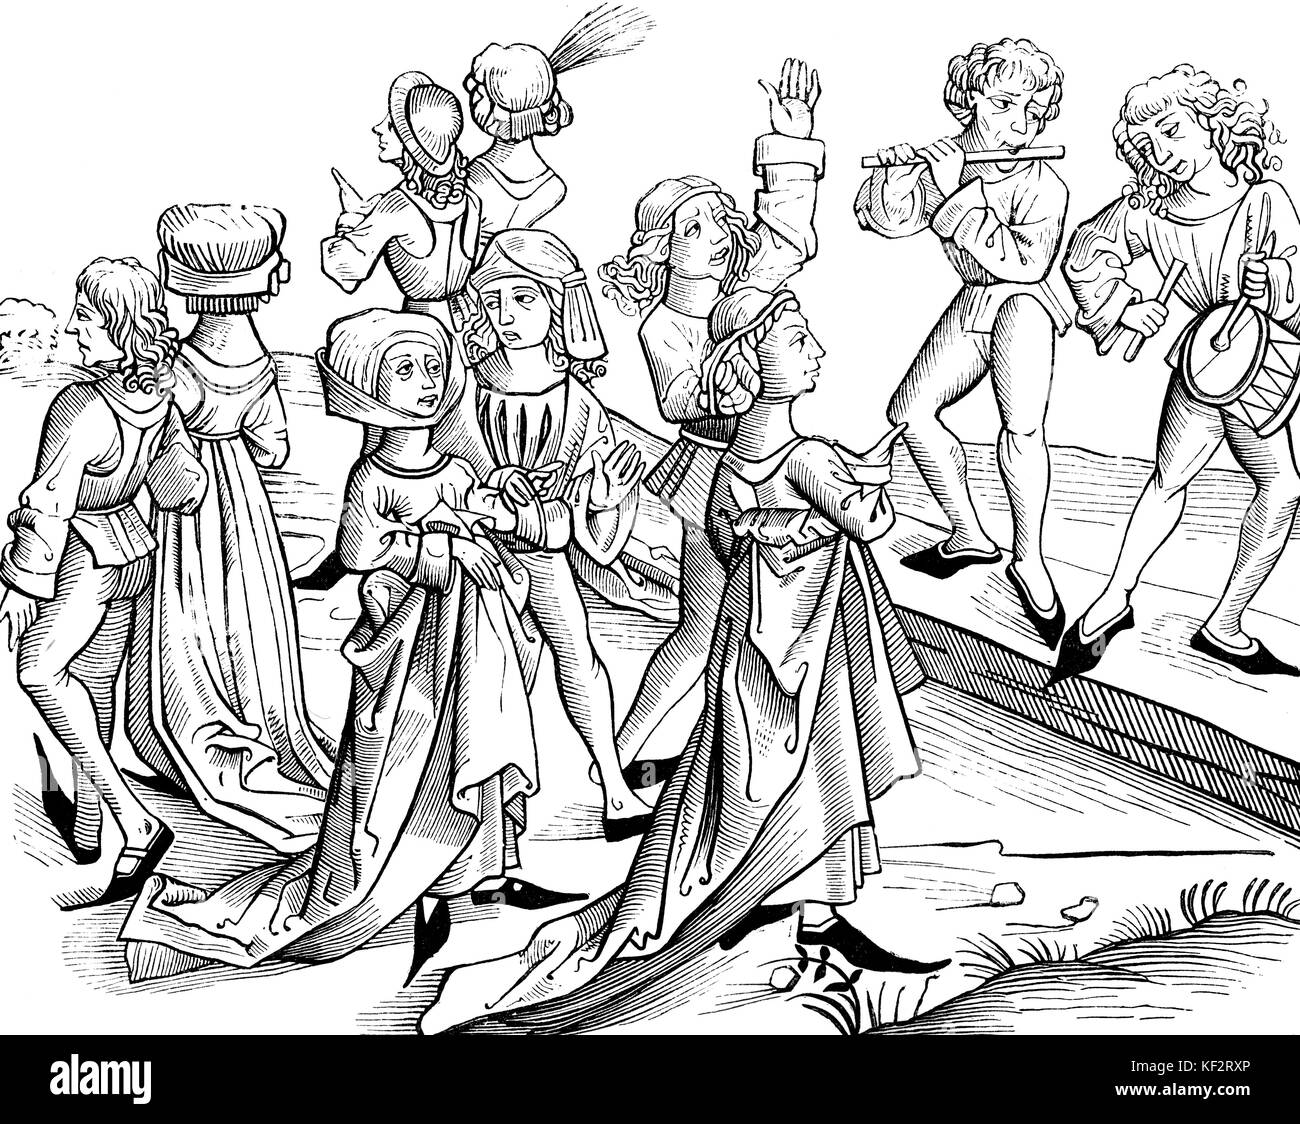 Mittelalterliche Tänzer und Musiker spielen Pipe & Tabor in der Weihnachtsnacht - Abbildung von S. Wolgmuth 1493. Von "Liber Chronicarum Mundi". Stockfoto